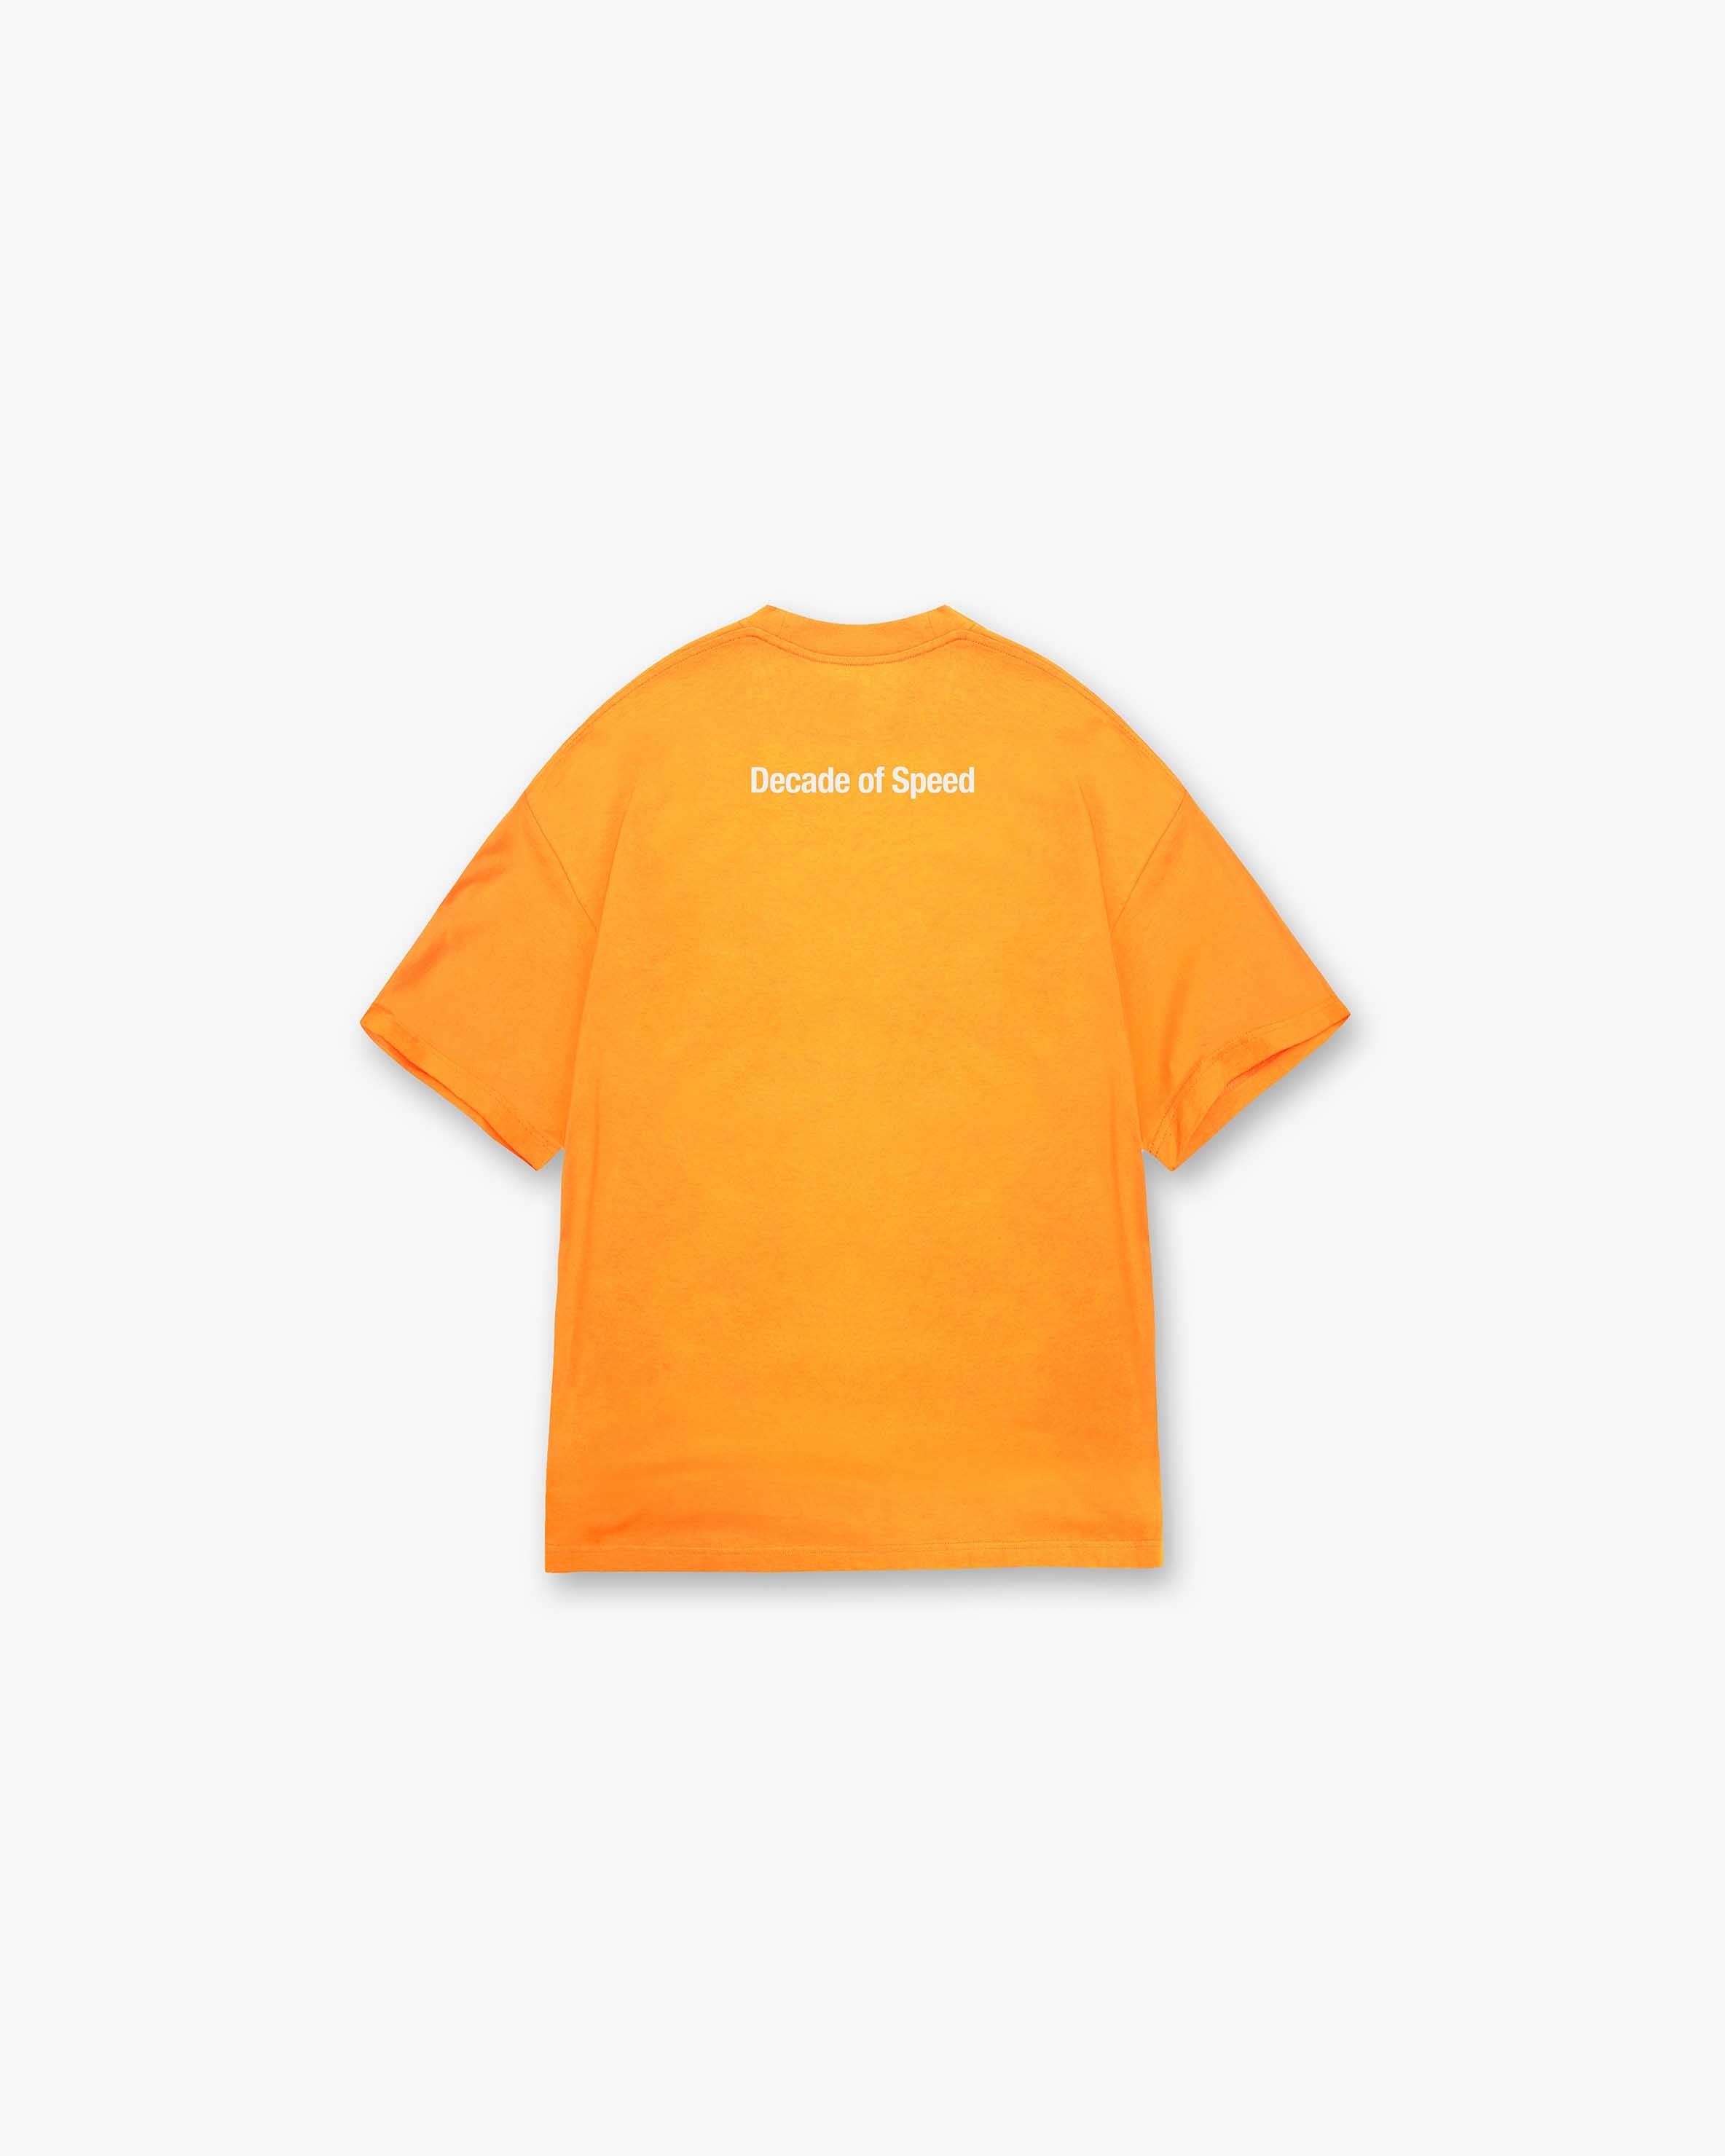 Decade of Speed T-Shirt - Neon Orange